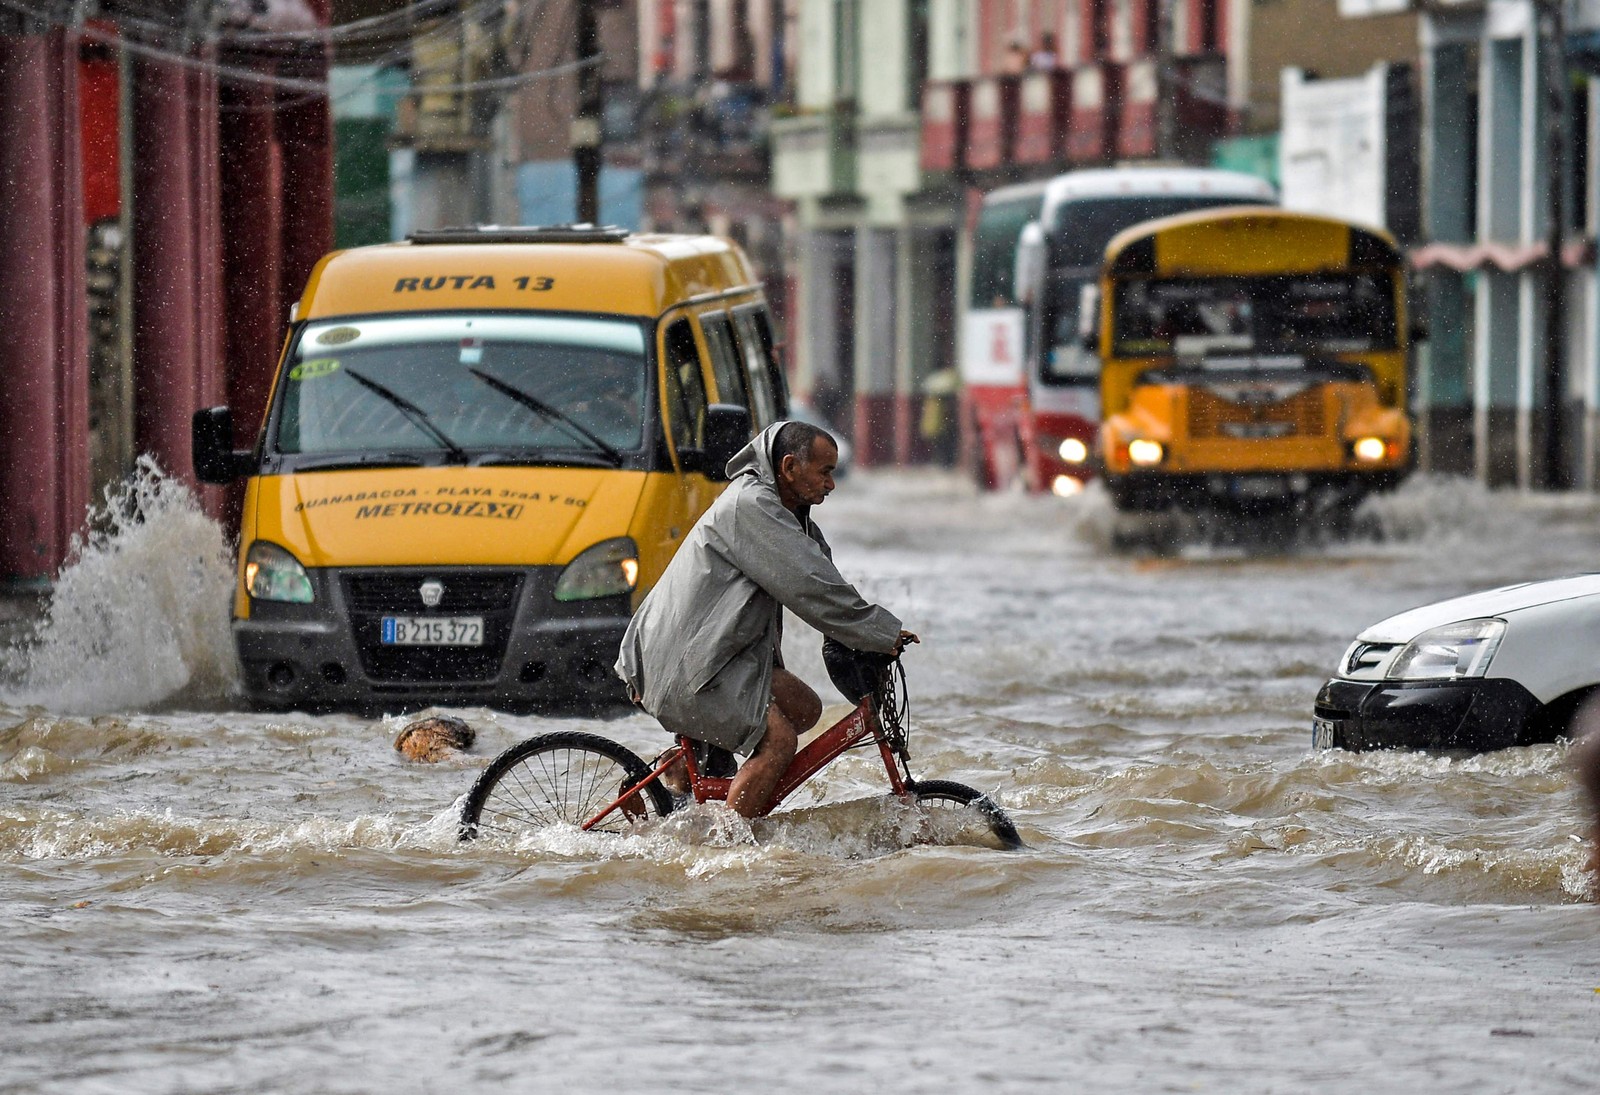 As fortes chuvas dos remanescentes do furacão Agatha inundaram grande parte do oeste de Cuba na semana passada, matando pelo menos três pessoas em Havana — Foto: YAMIL LAGE / AFP